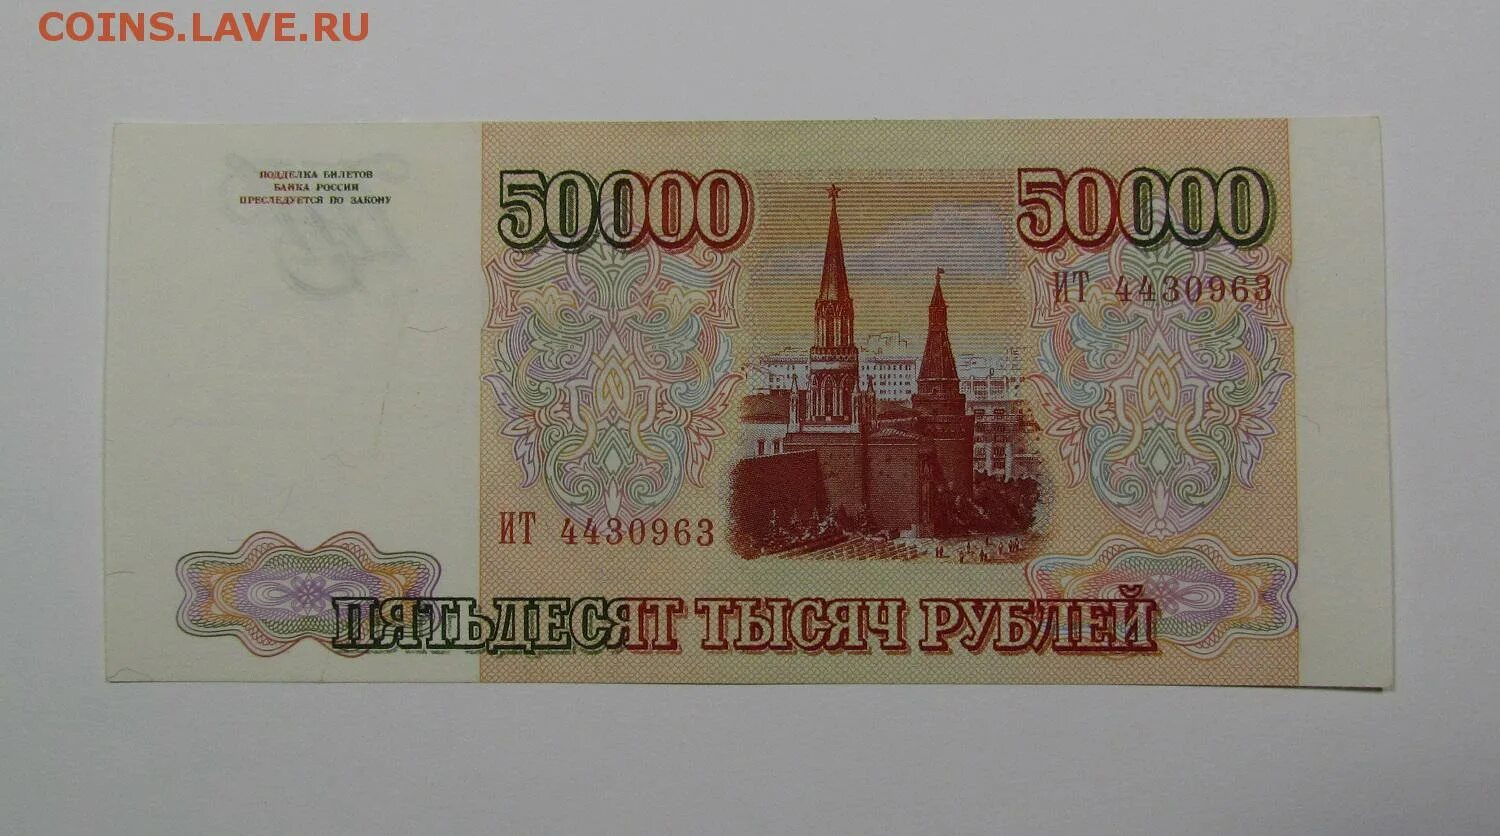 Более пятьдесят рублей. 50000 Рублей. Купюра 50000 рублей. 50000 Рублей 1993. Банкнота 50000 рублей.